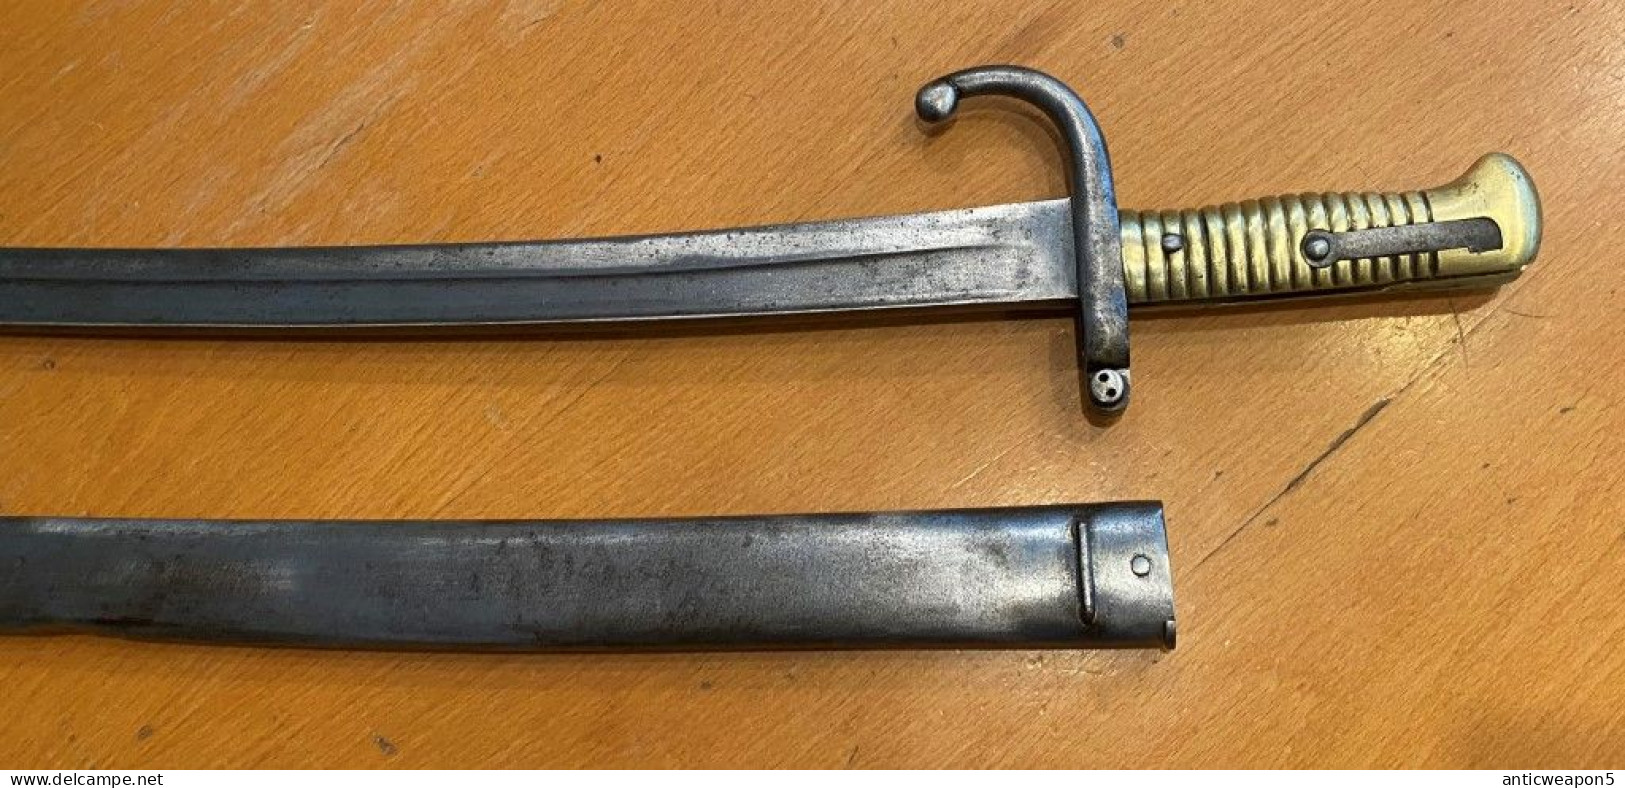 Baïonnette Chasspot. France. M1866 (776) - Knives/Swords